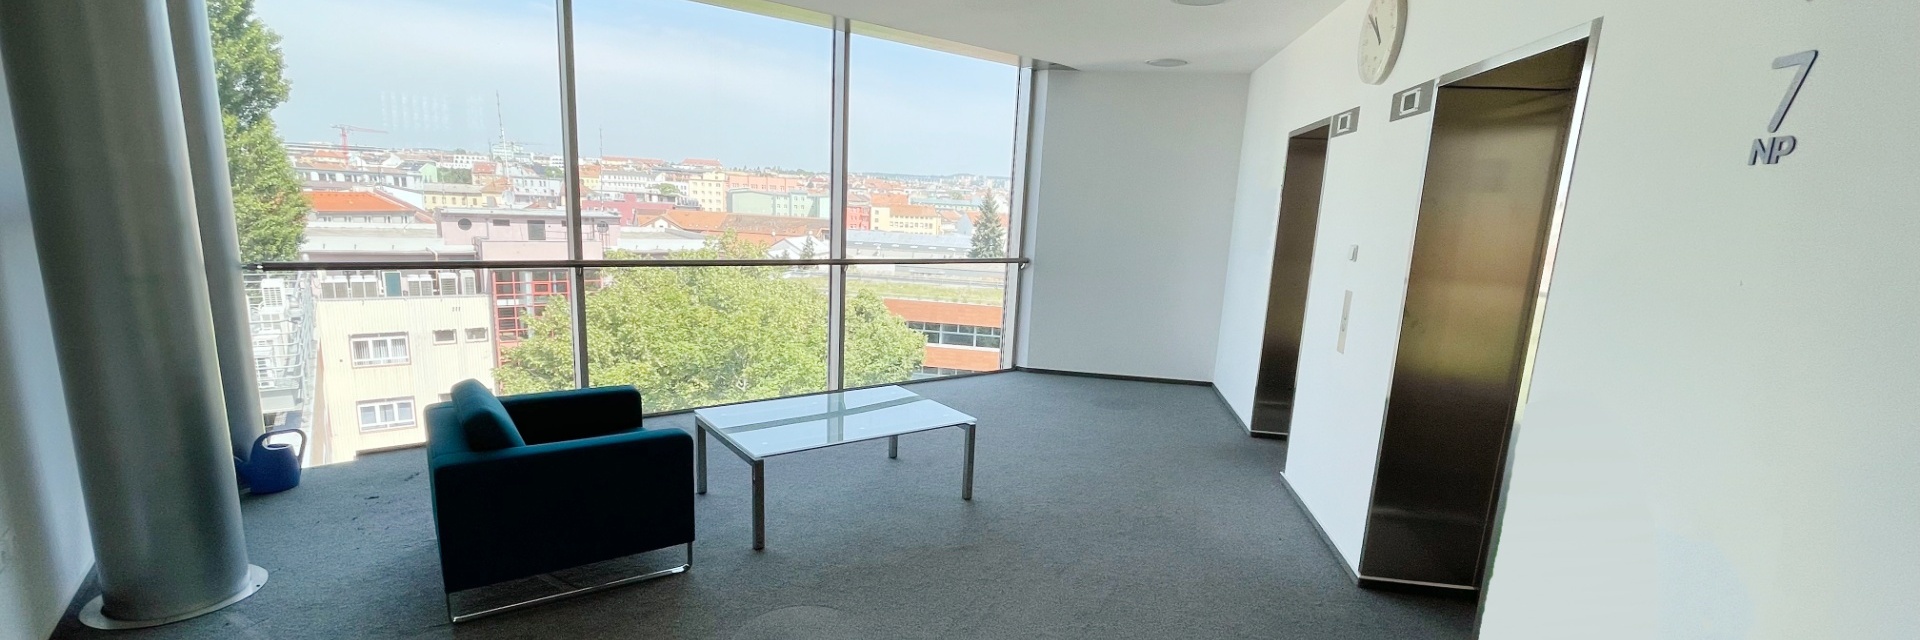 Pronájem kanceláře 39 m², ulice Plynárenská, Brno